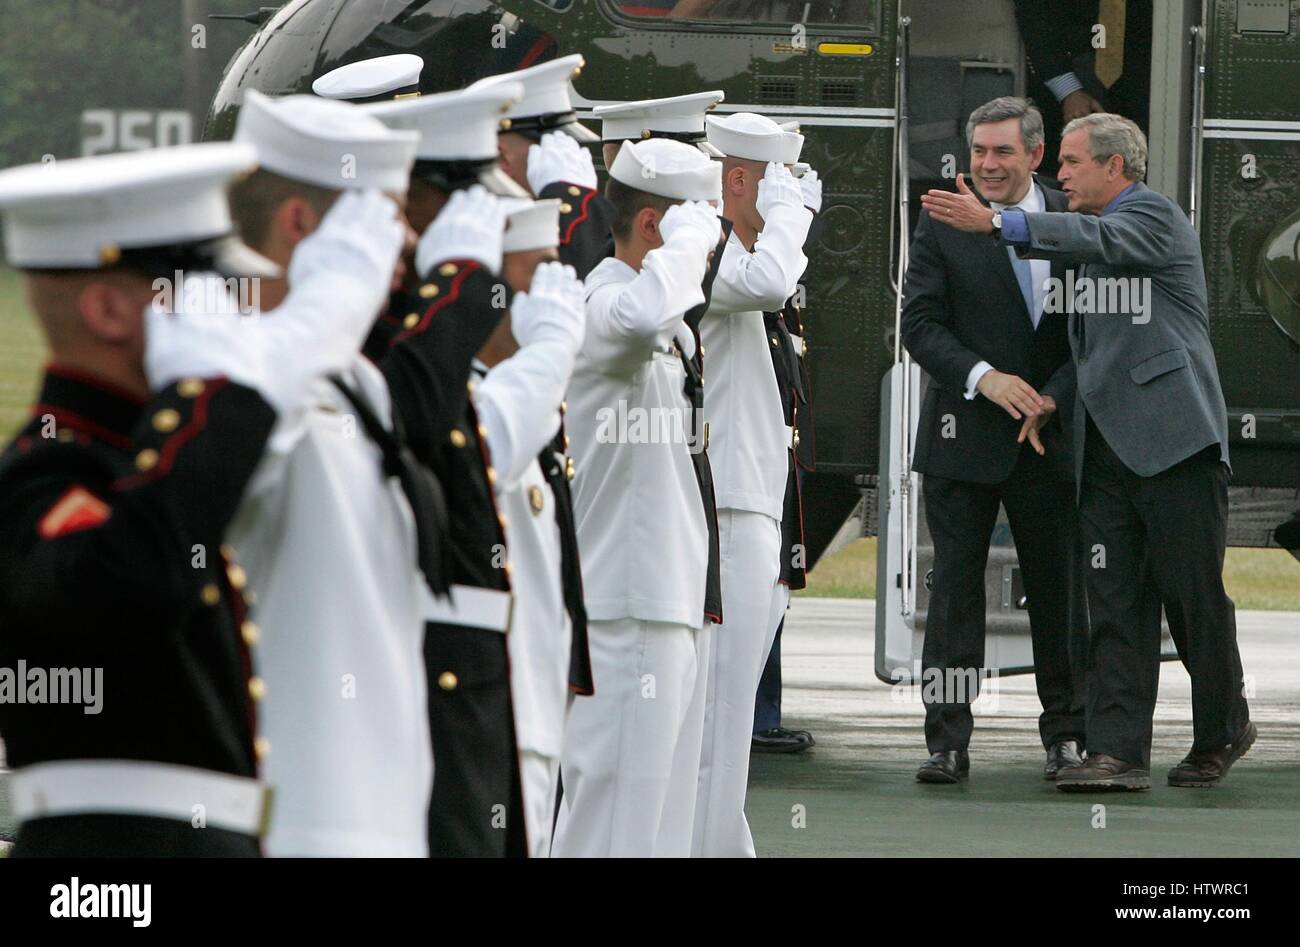 CAMP DAVID, MD - 29 juillet : (AFP) membres de la salut militaire Président américain George W Bush (R) comme il accueille le Premier ministre britannique Gordon Brown arrivant à Camp David, le 29 juillet 2007 à Camp David (Maryland) Les deux dirigeants assisteront aux réunions de discus Banque D'Images